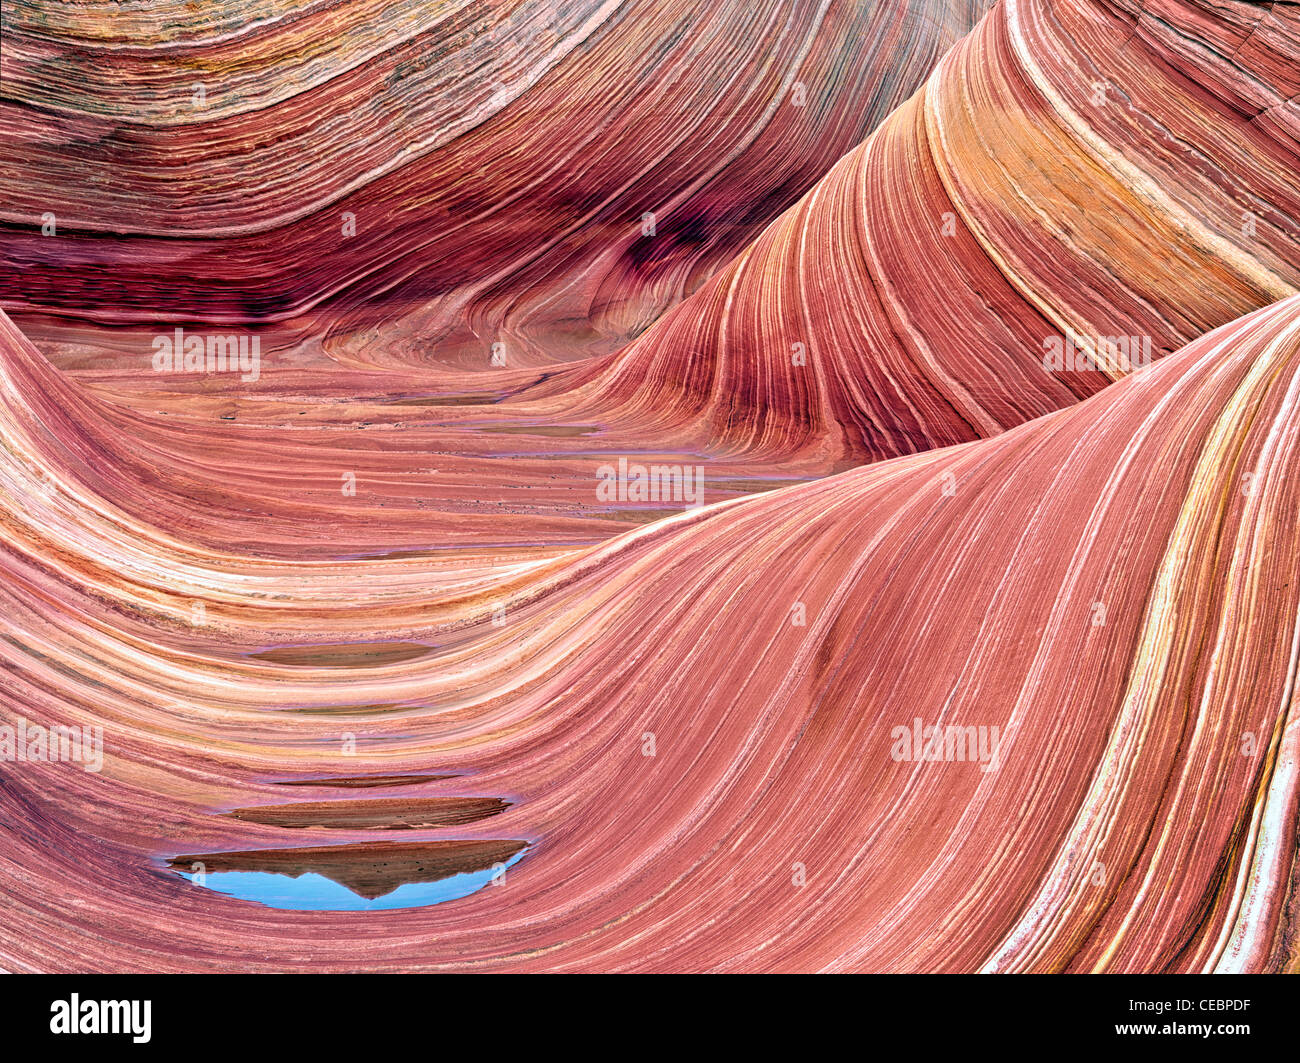 Formación Sandtone y piscina de agua en el norte de Coyote Buttes, la onda. Cañón de Paria Vermillion Cliffs Wilderness. Utah y Arizona Foto de stock